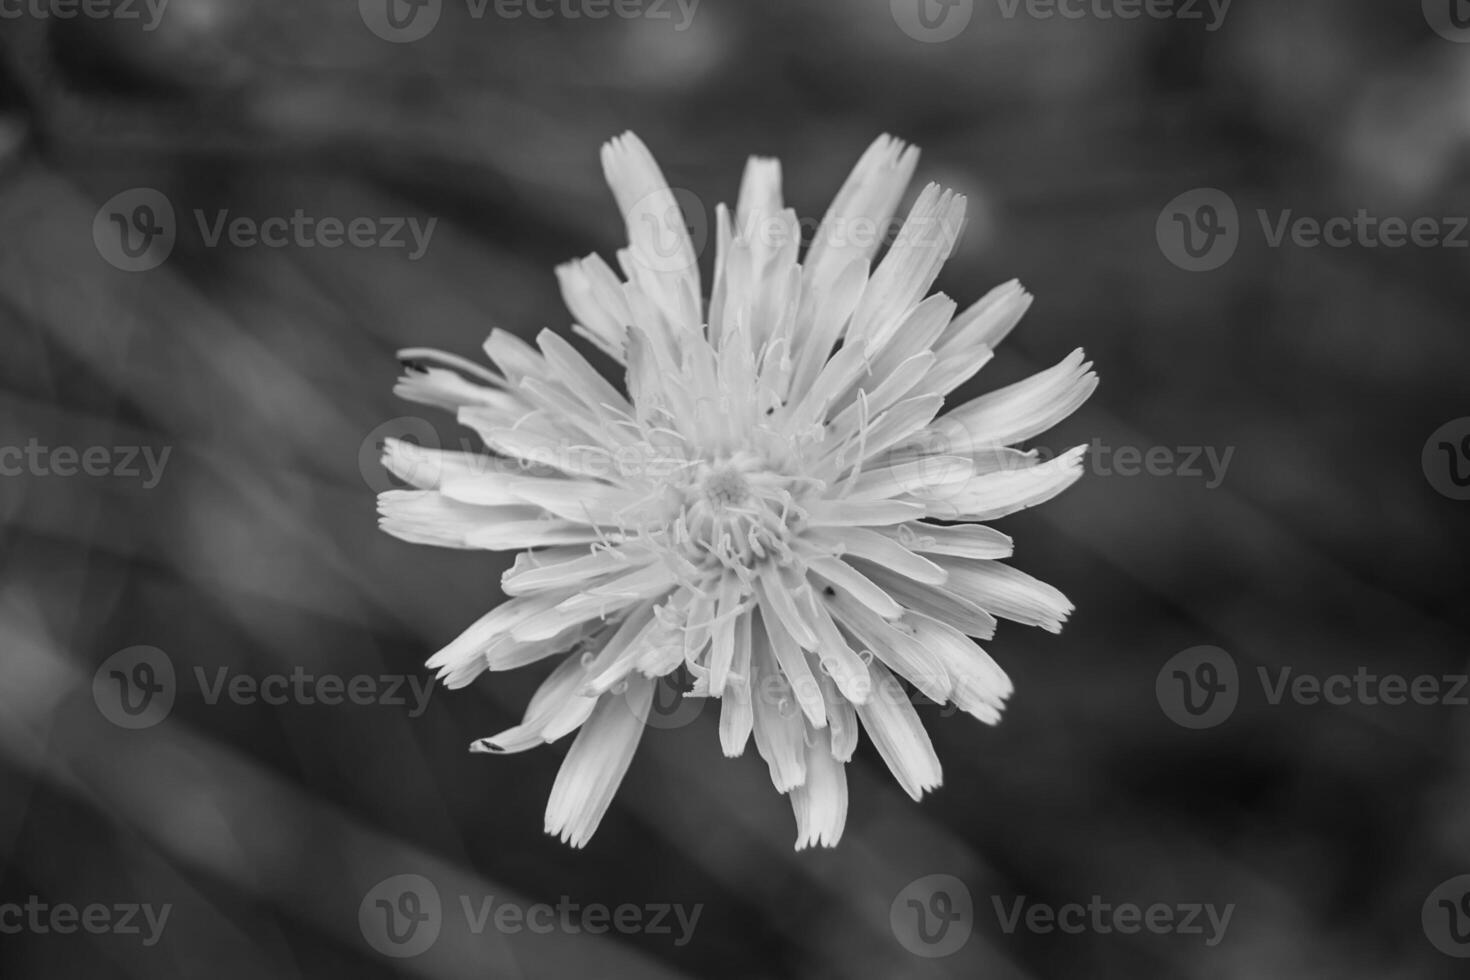 dente-de-leão de sementes de flores silvestres em prado de fundo foto